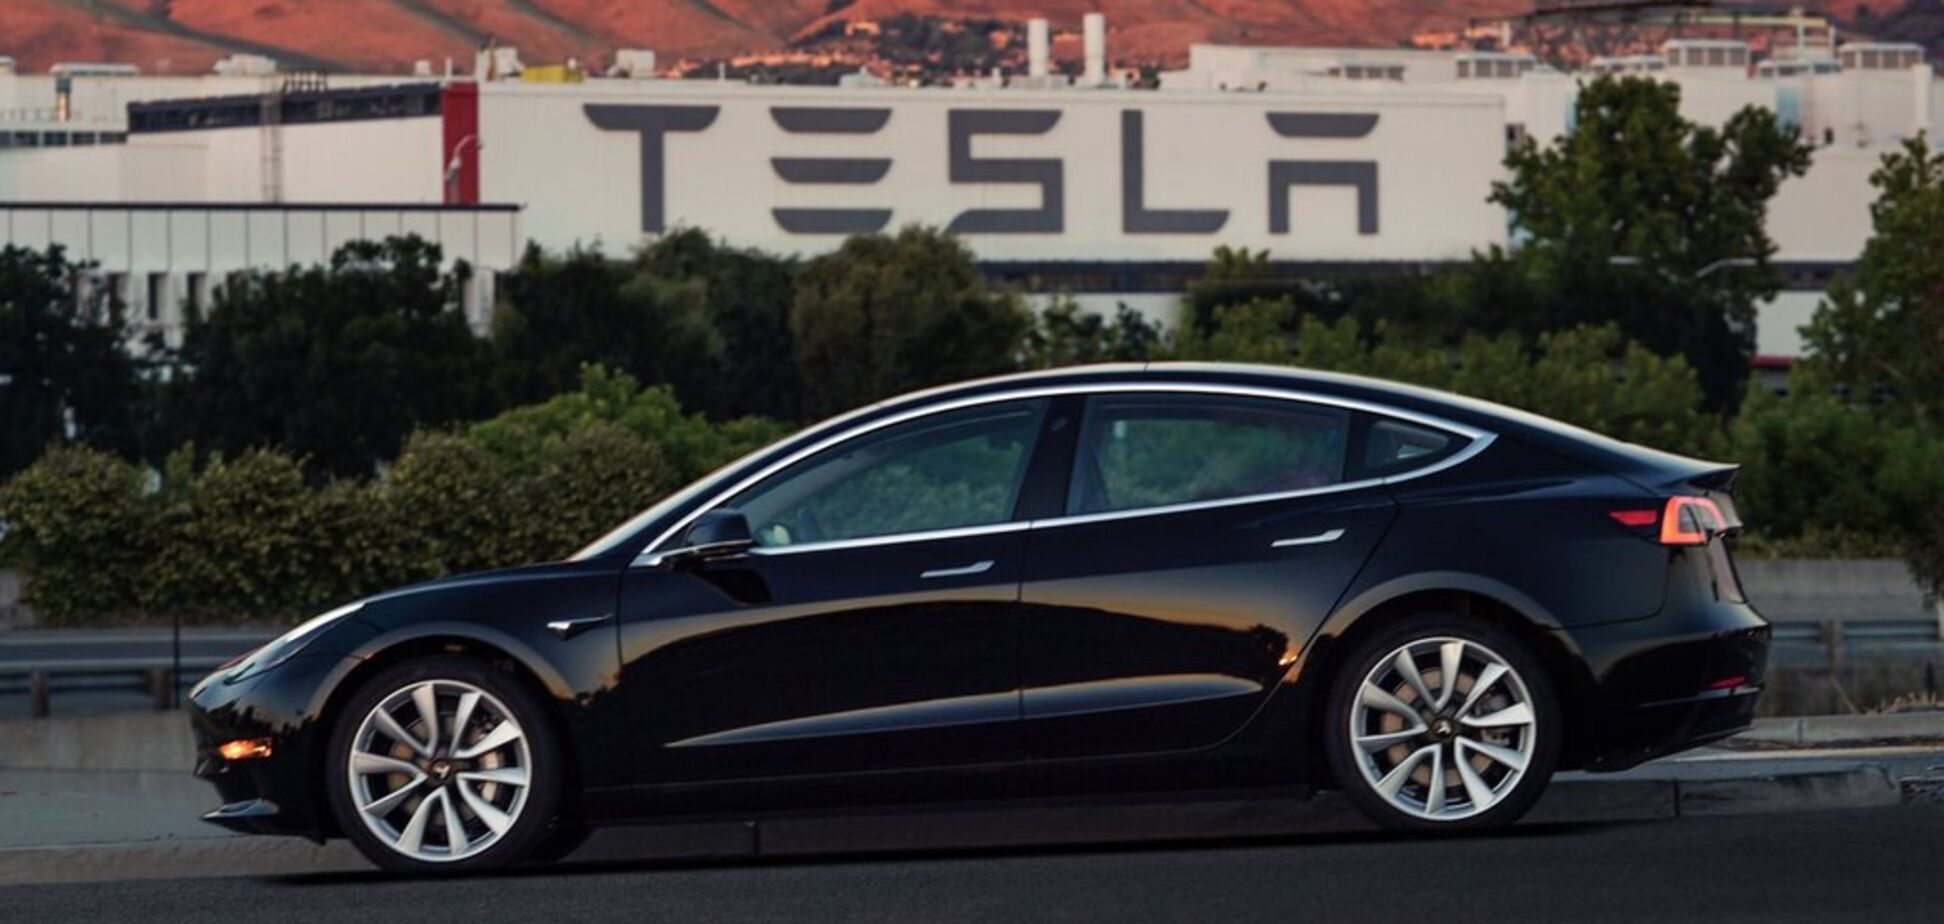 Tesla поставила рекорд з продажу авто й збагатилася